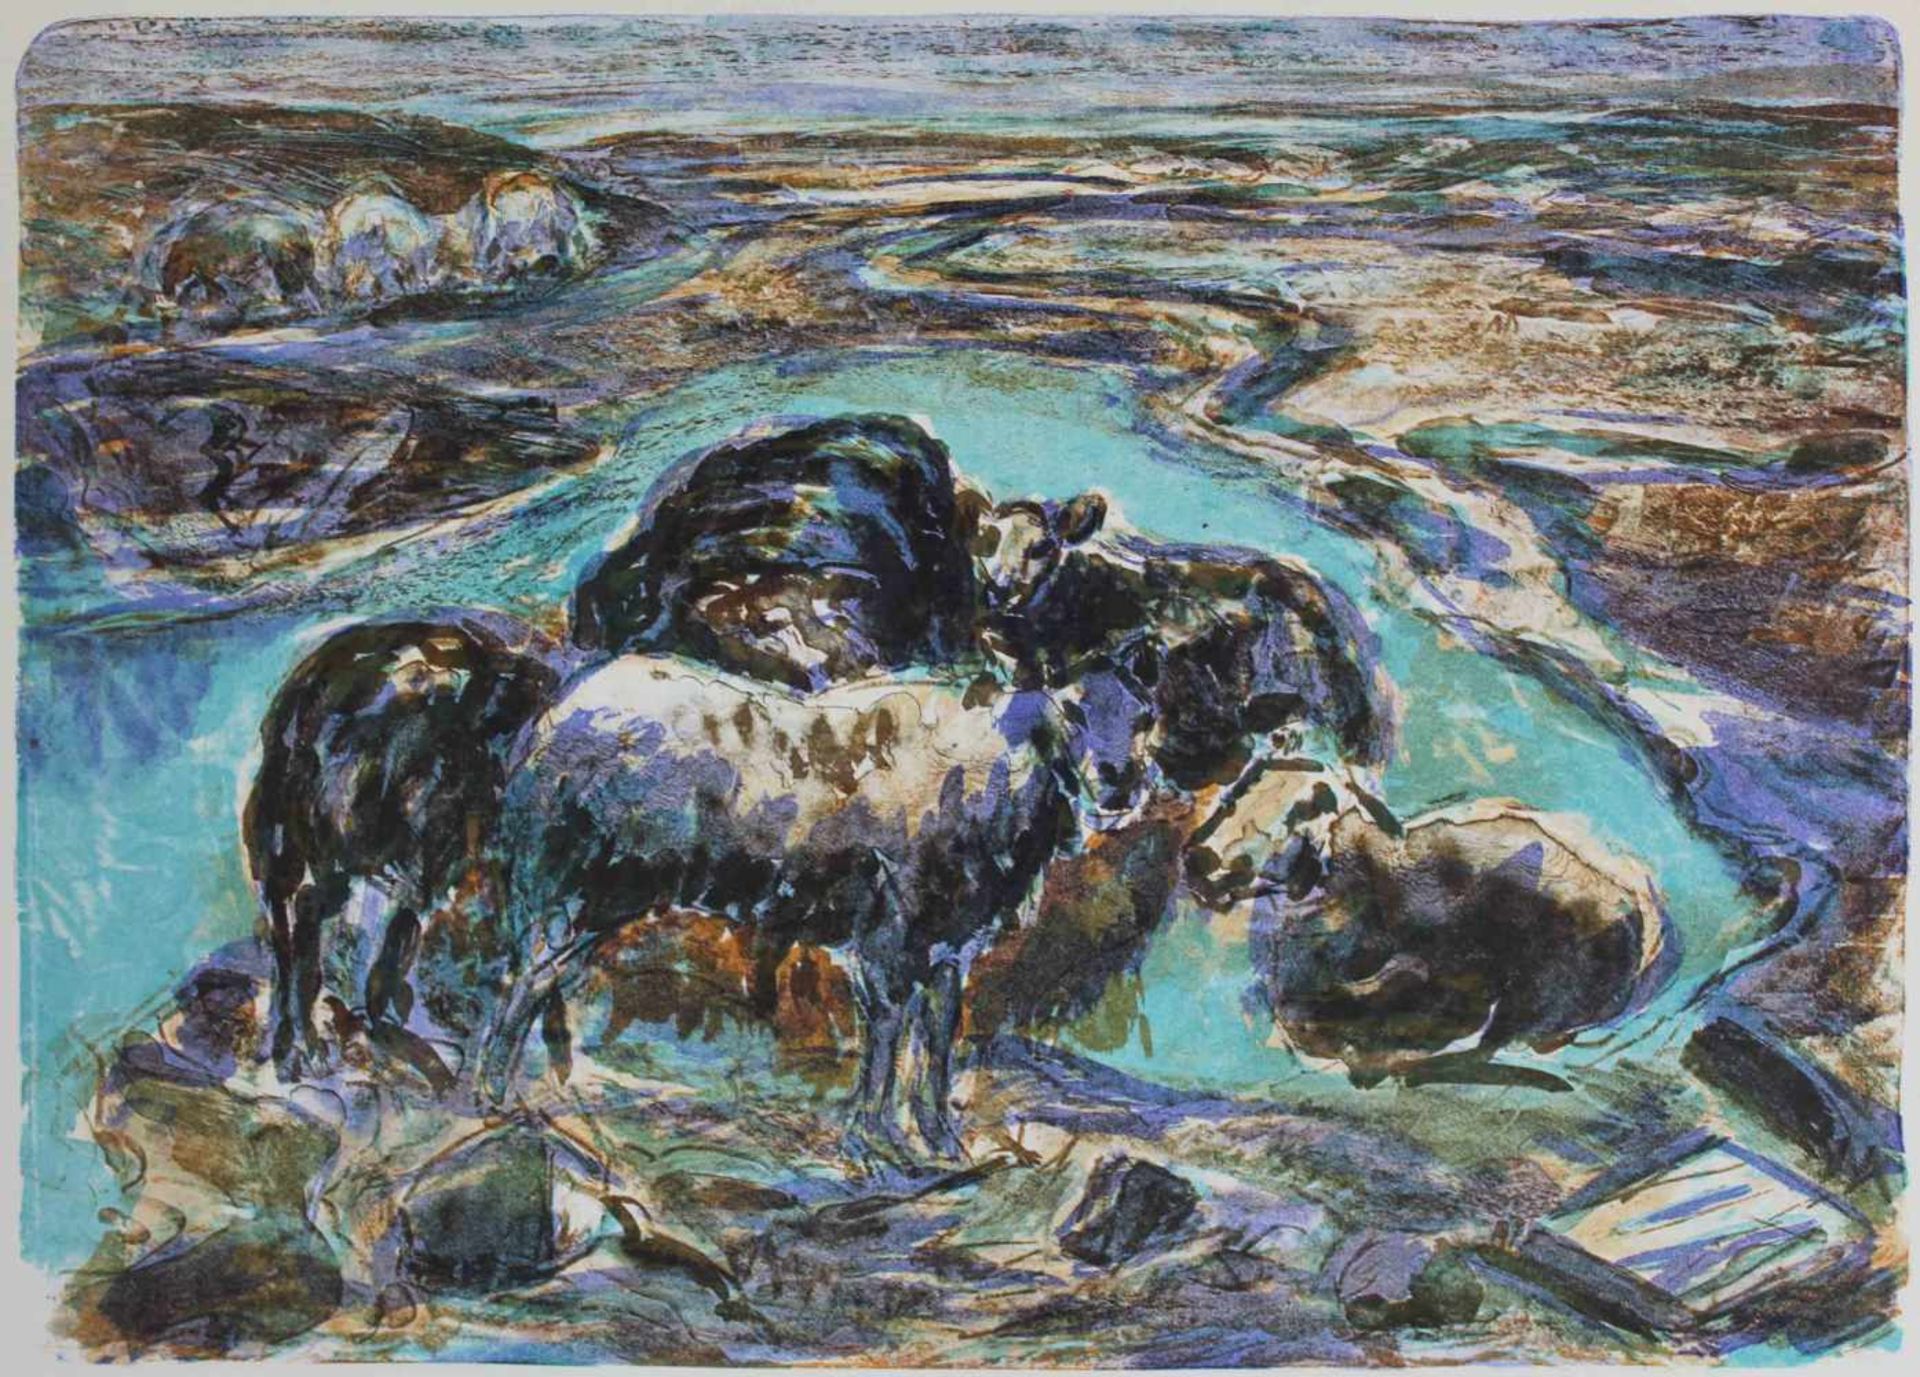 Helmut STURM (1932 - 2008). "Sylter Watt und Schafe" 1992. 50 cm x 65 cm das Blatt. Lithographie auf